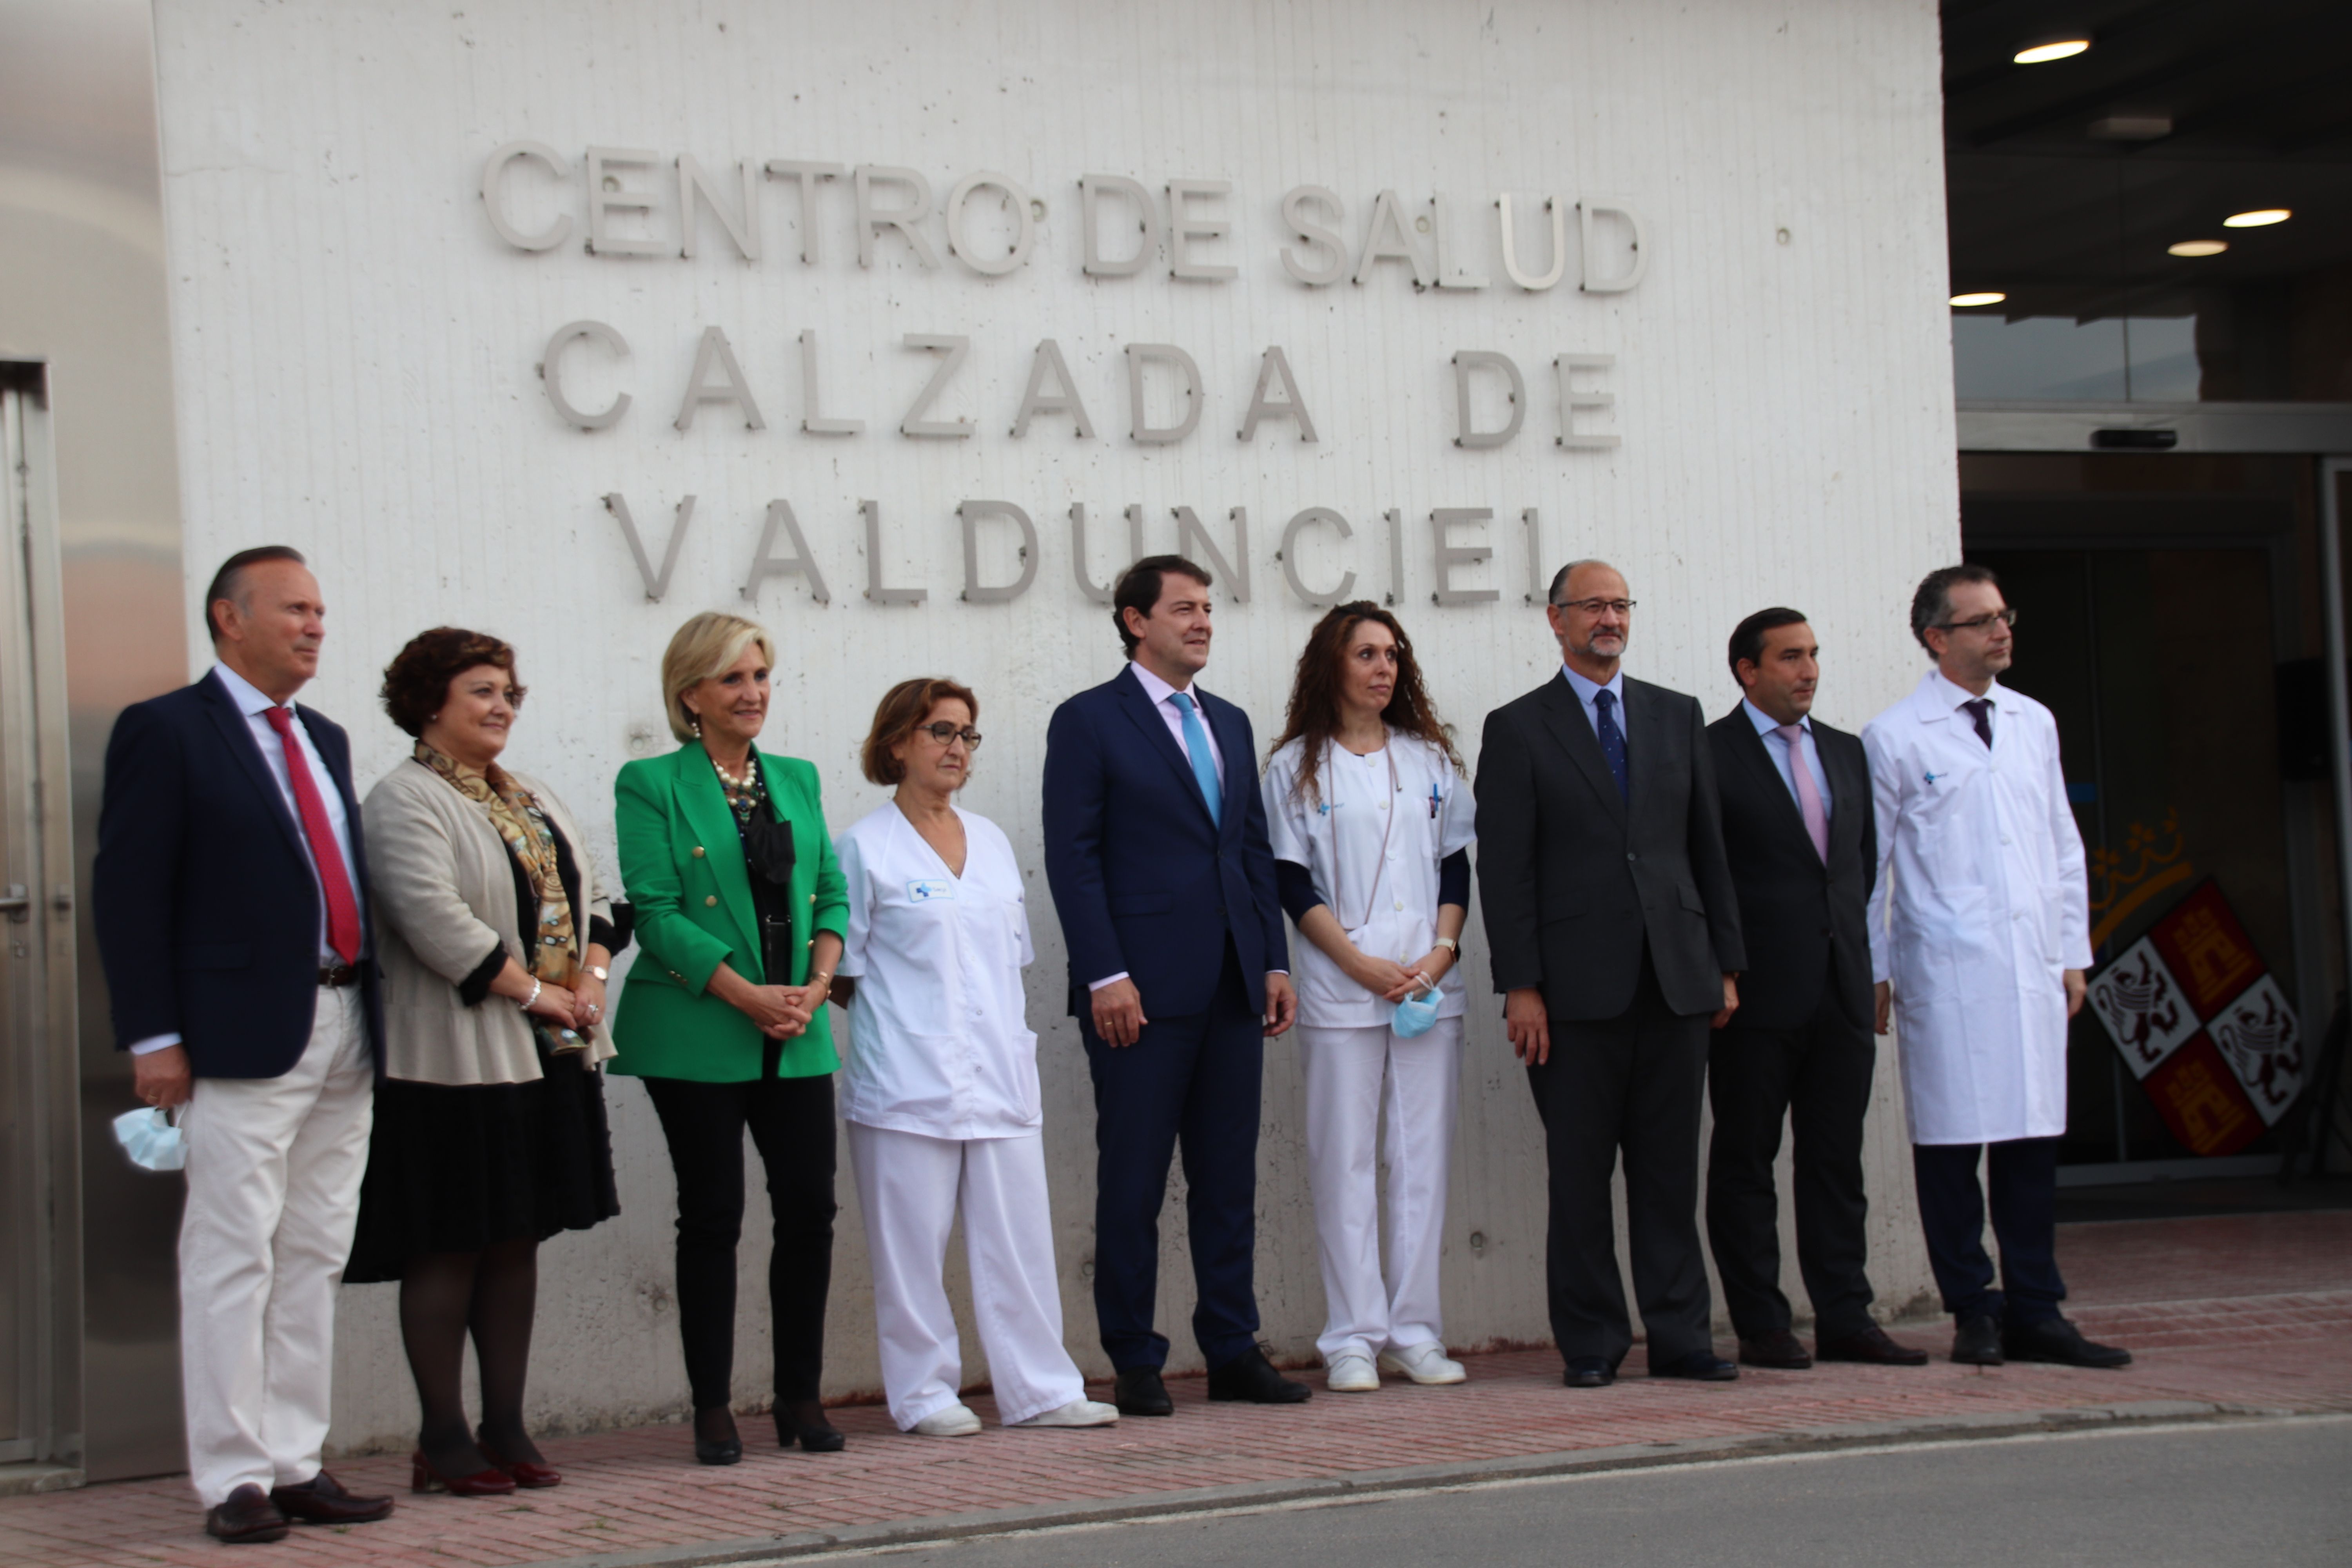 Inauguración del centro de salud de Calzada de Valdunciel 